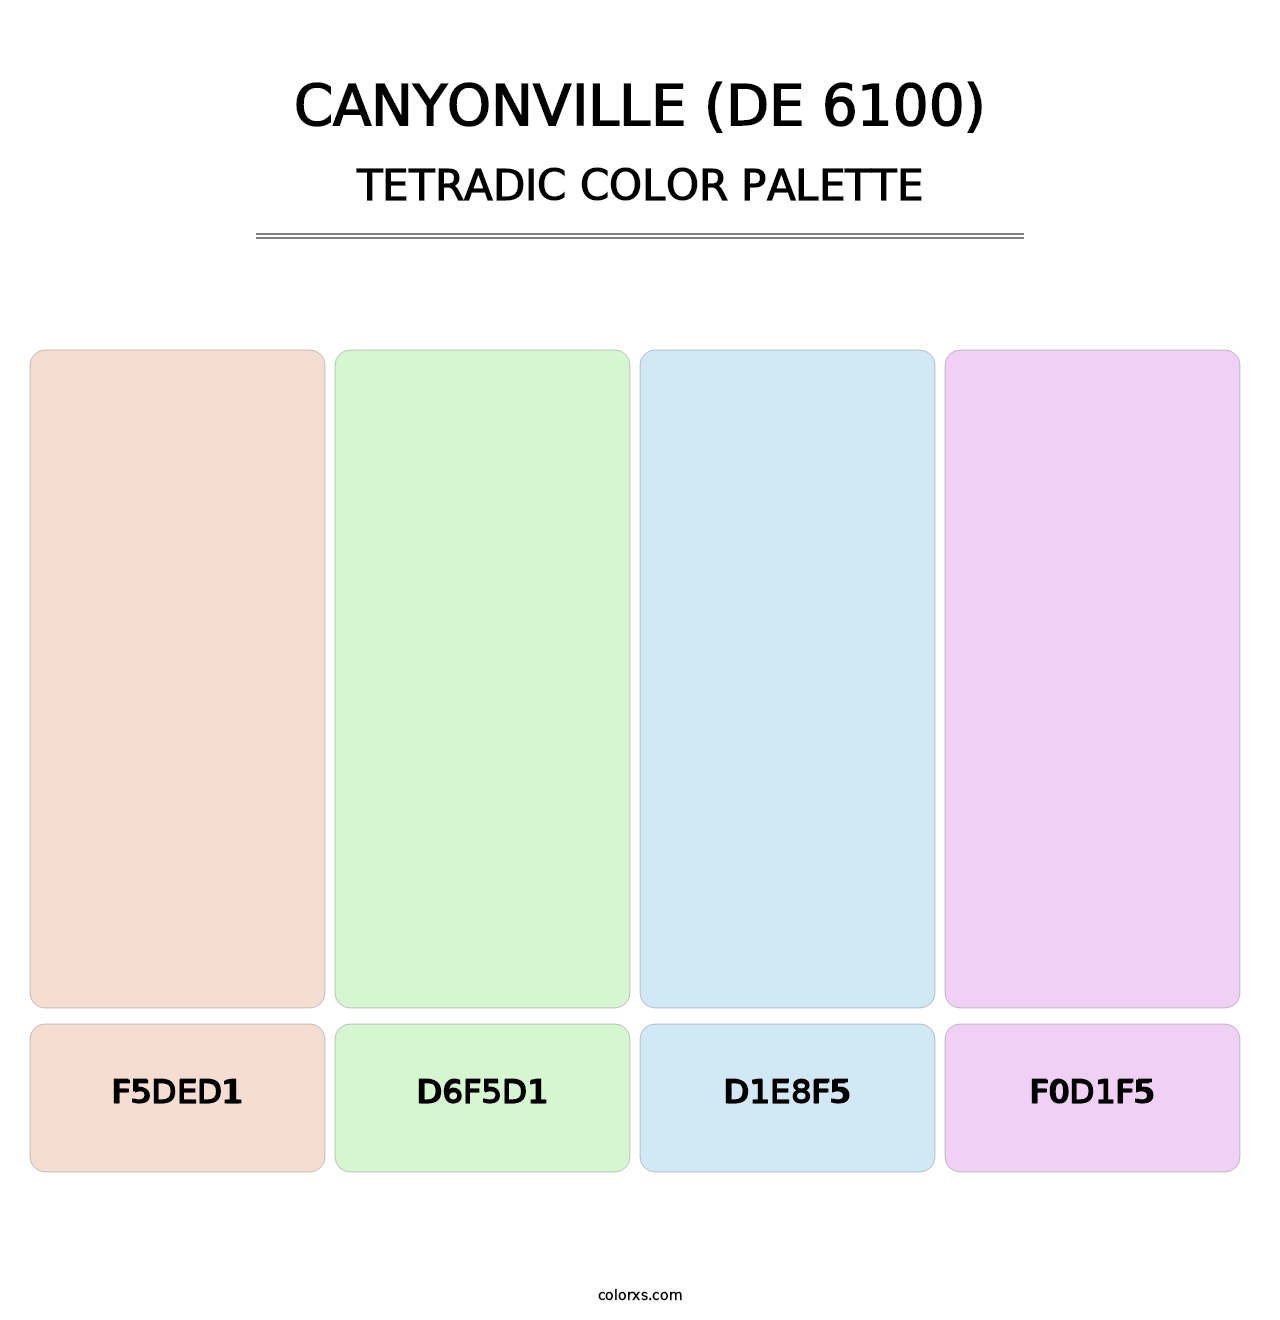 Canyonville (DE 6100) - Tetradic Color Palette